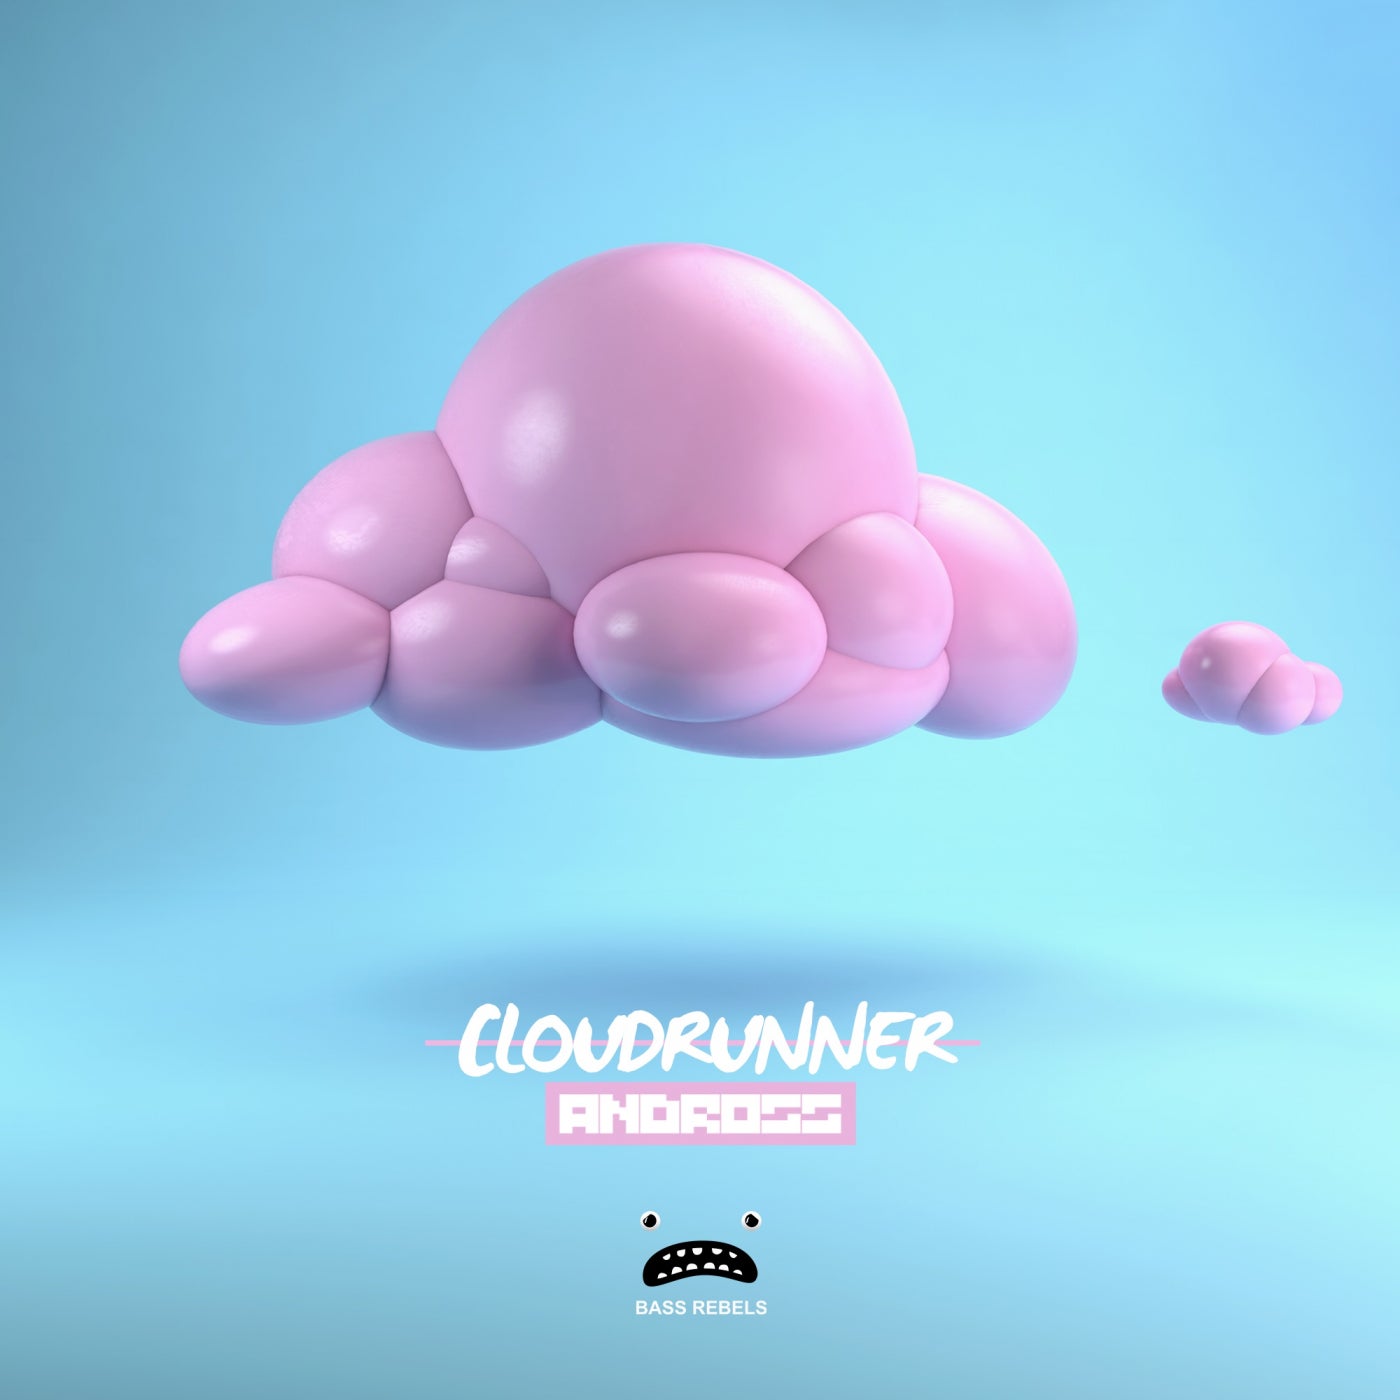 Cloudrunner